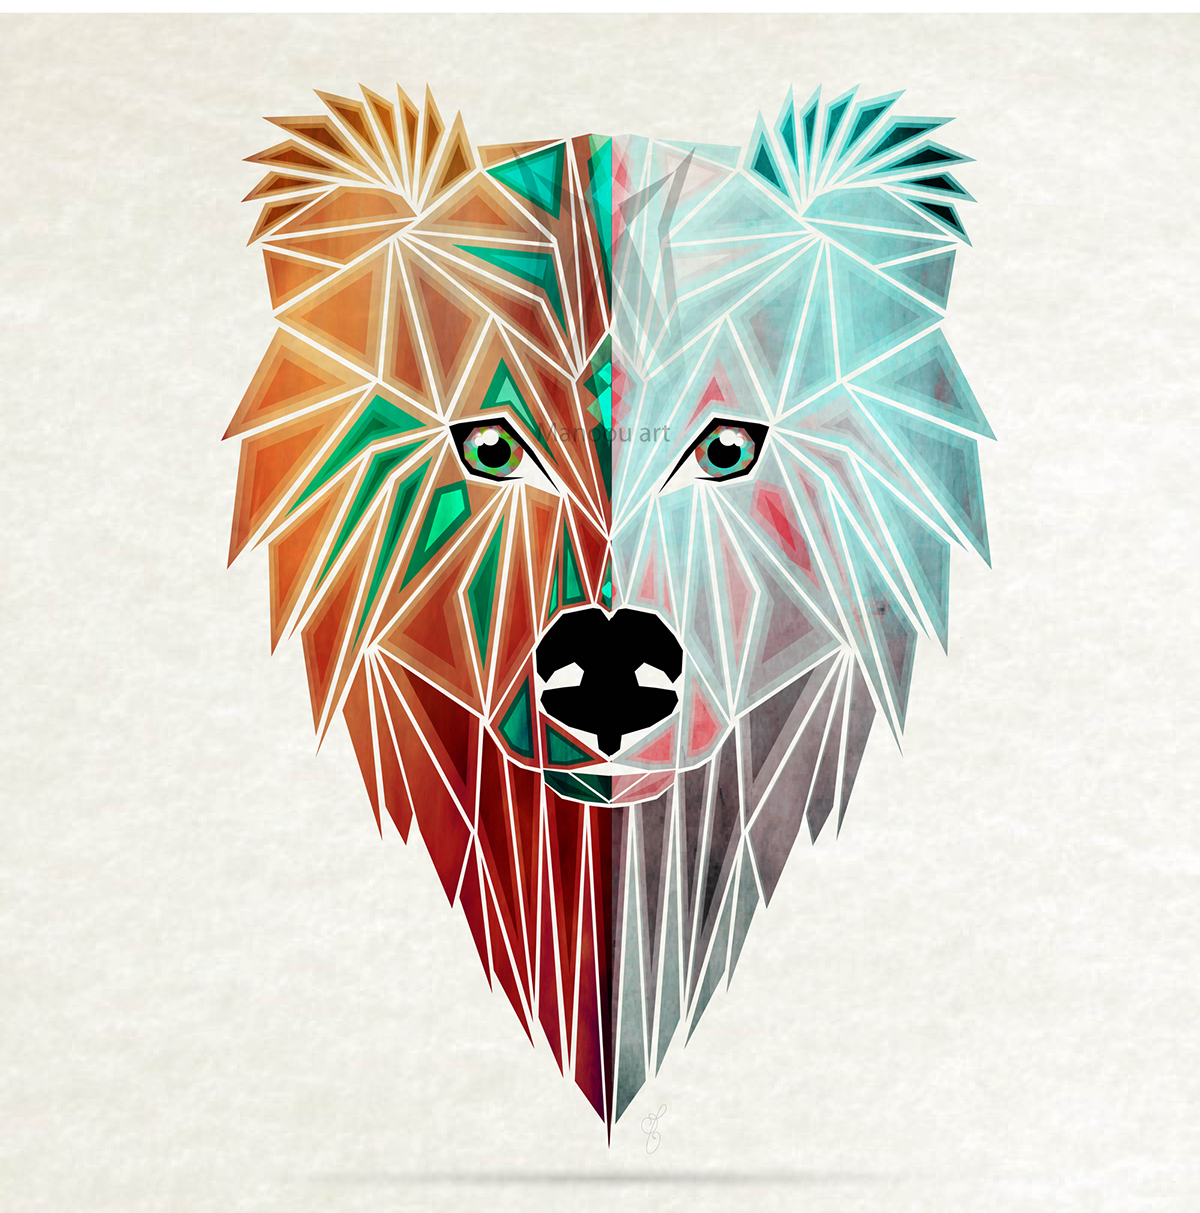 bear Polarbear animal géométrique geometric shape abstract triangle wild savage season ours face